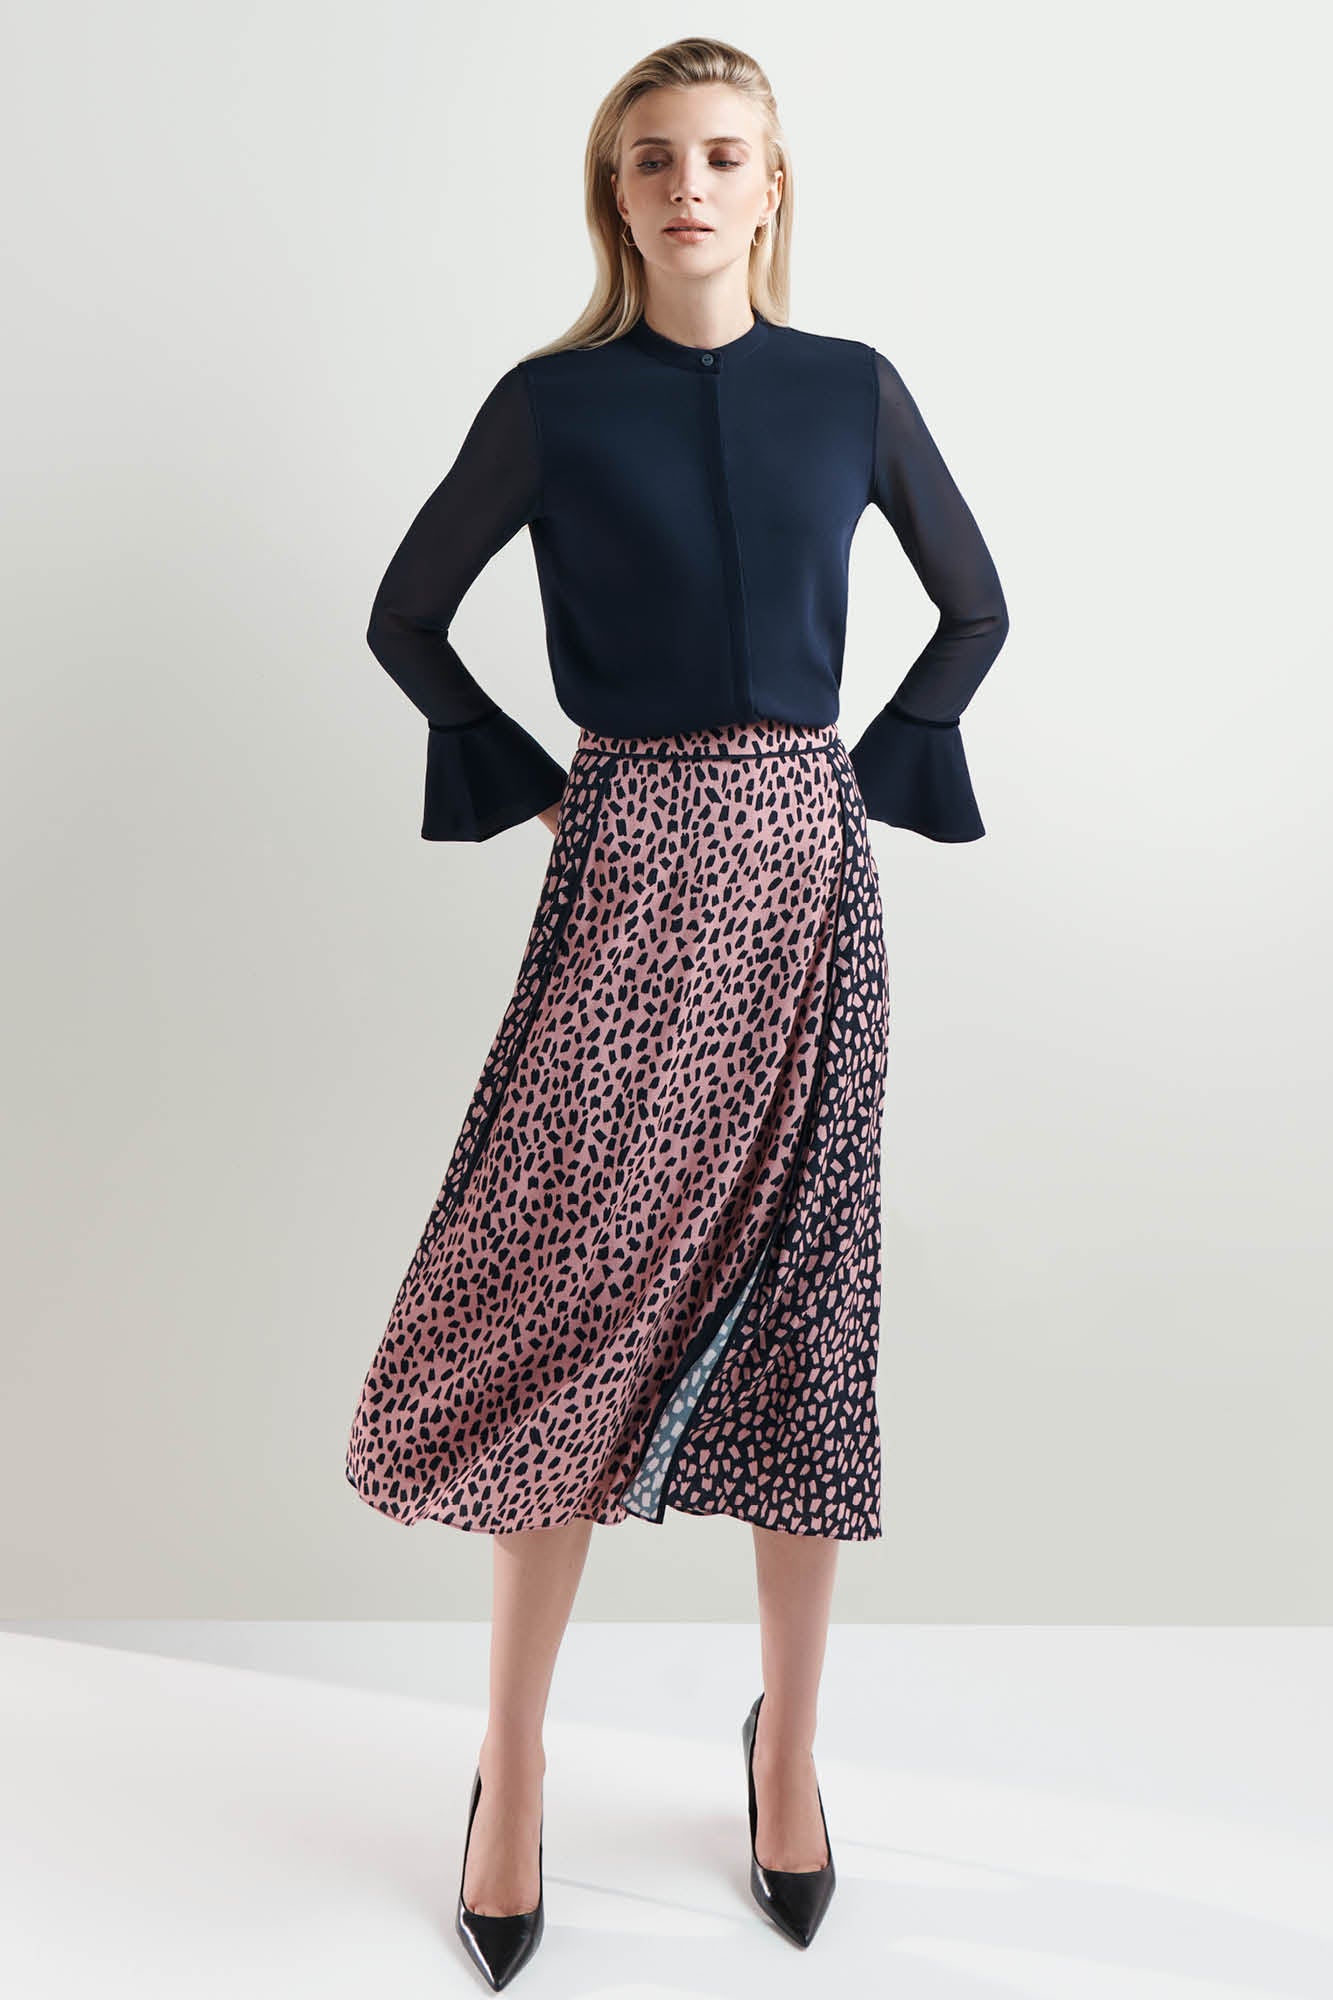 Latimer Terrazzo Print Skirt